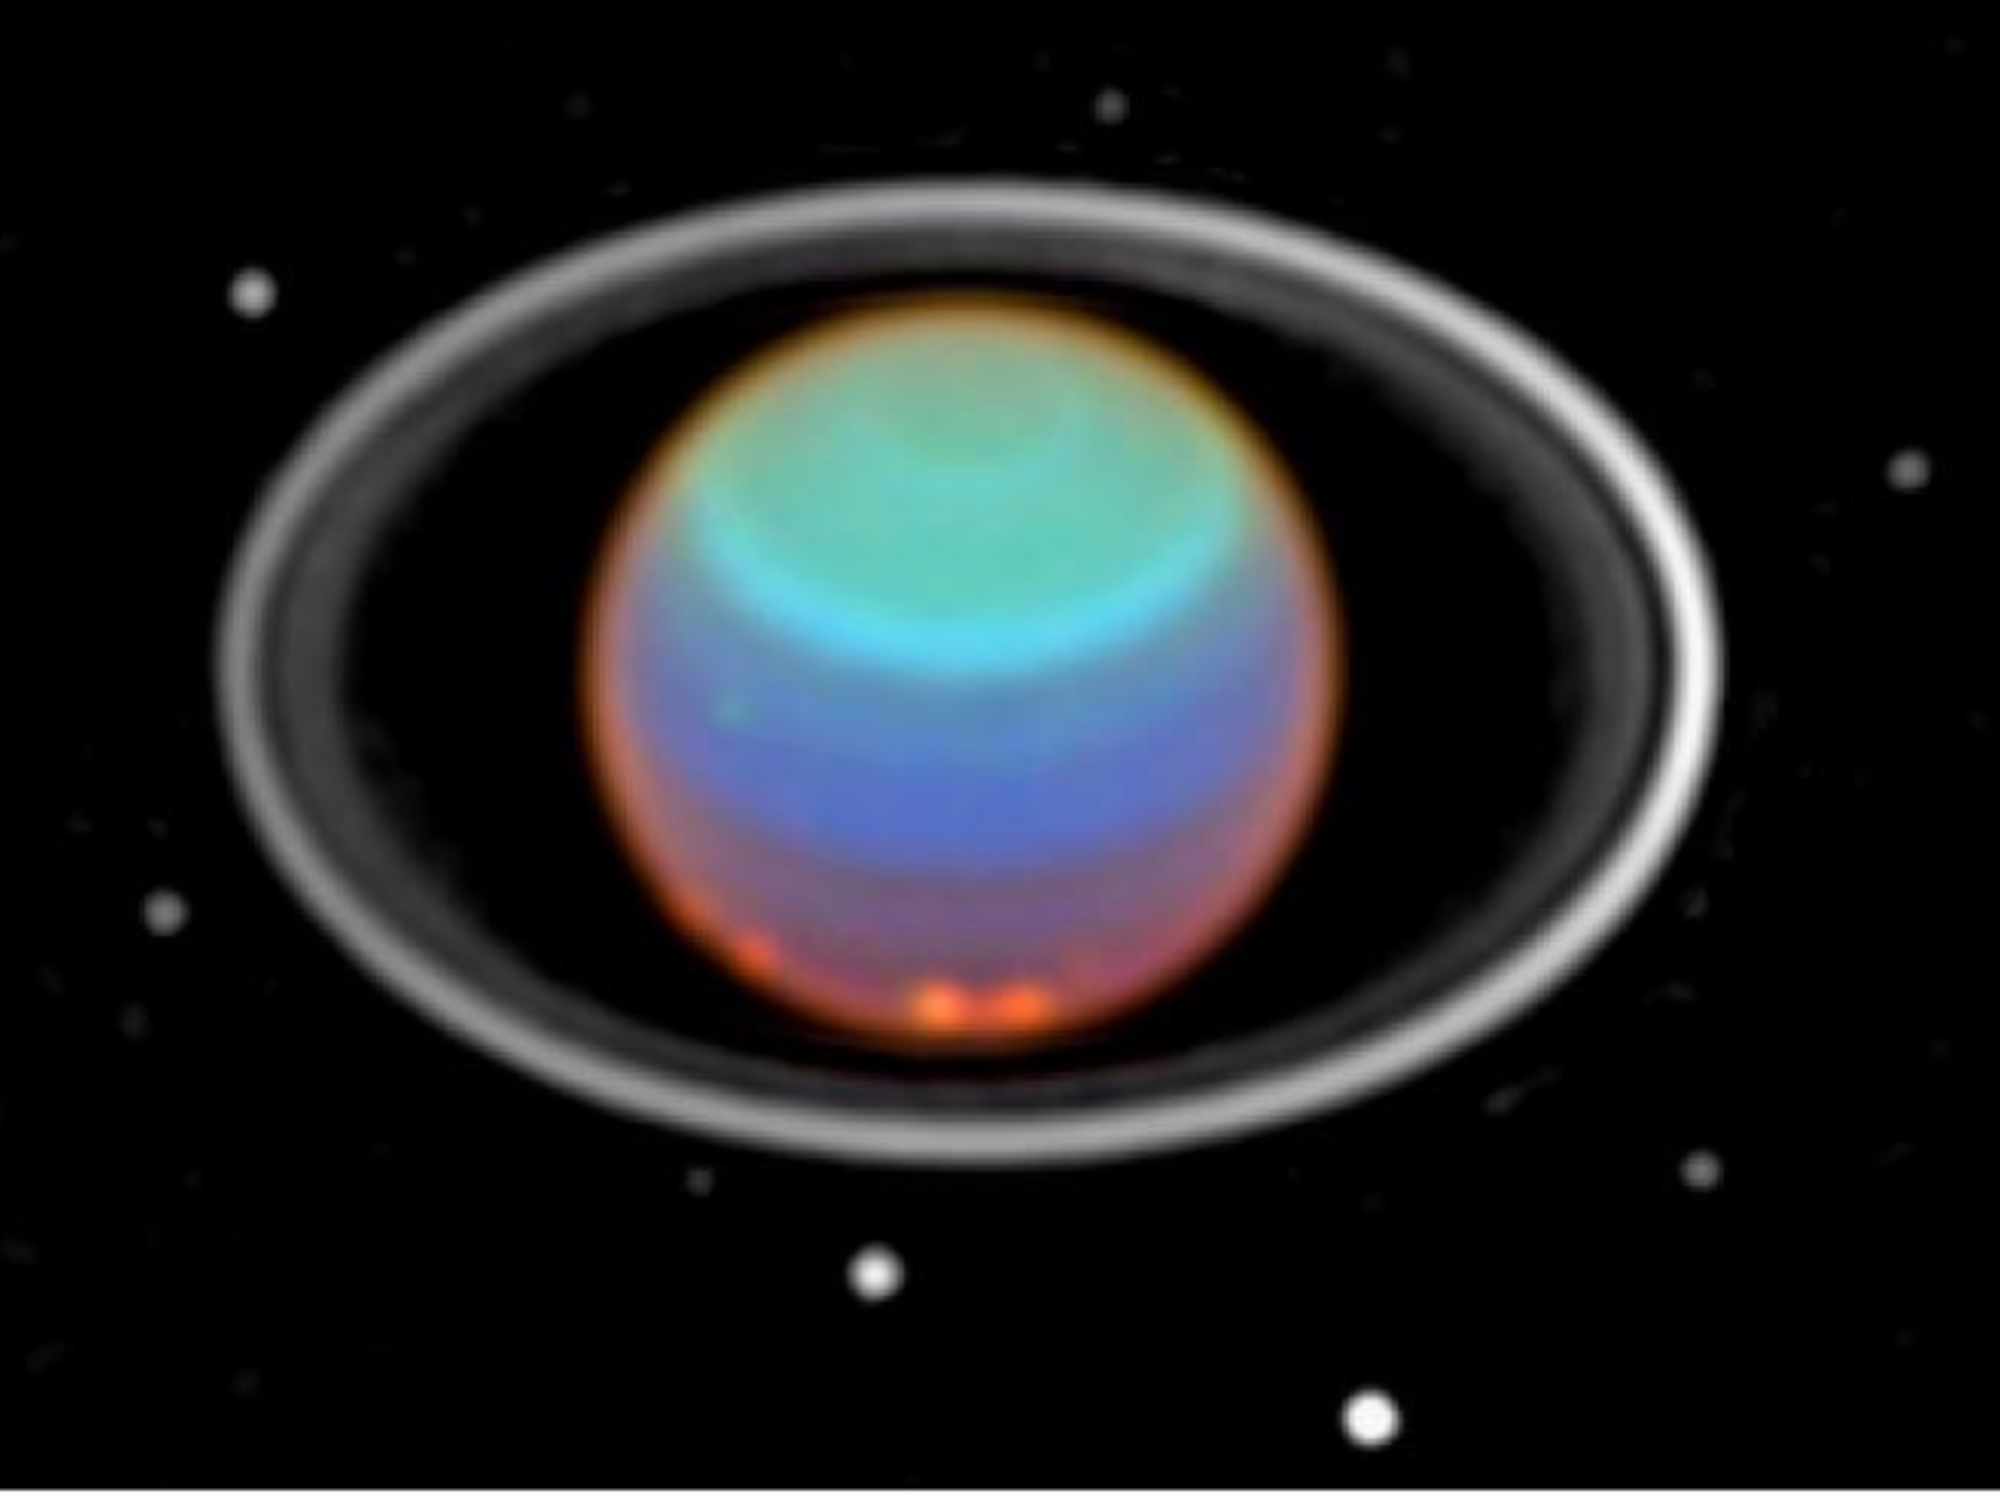 Siódma planeta w pobliżu Ziemi – Uran i chiński statek kosmiczny